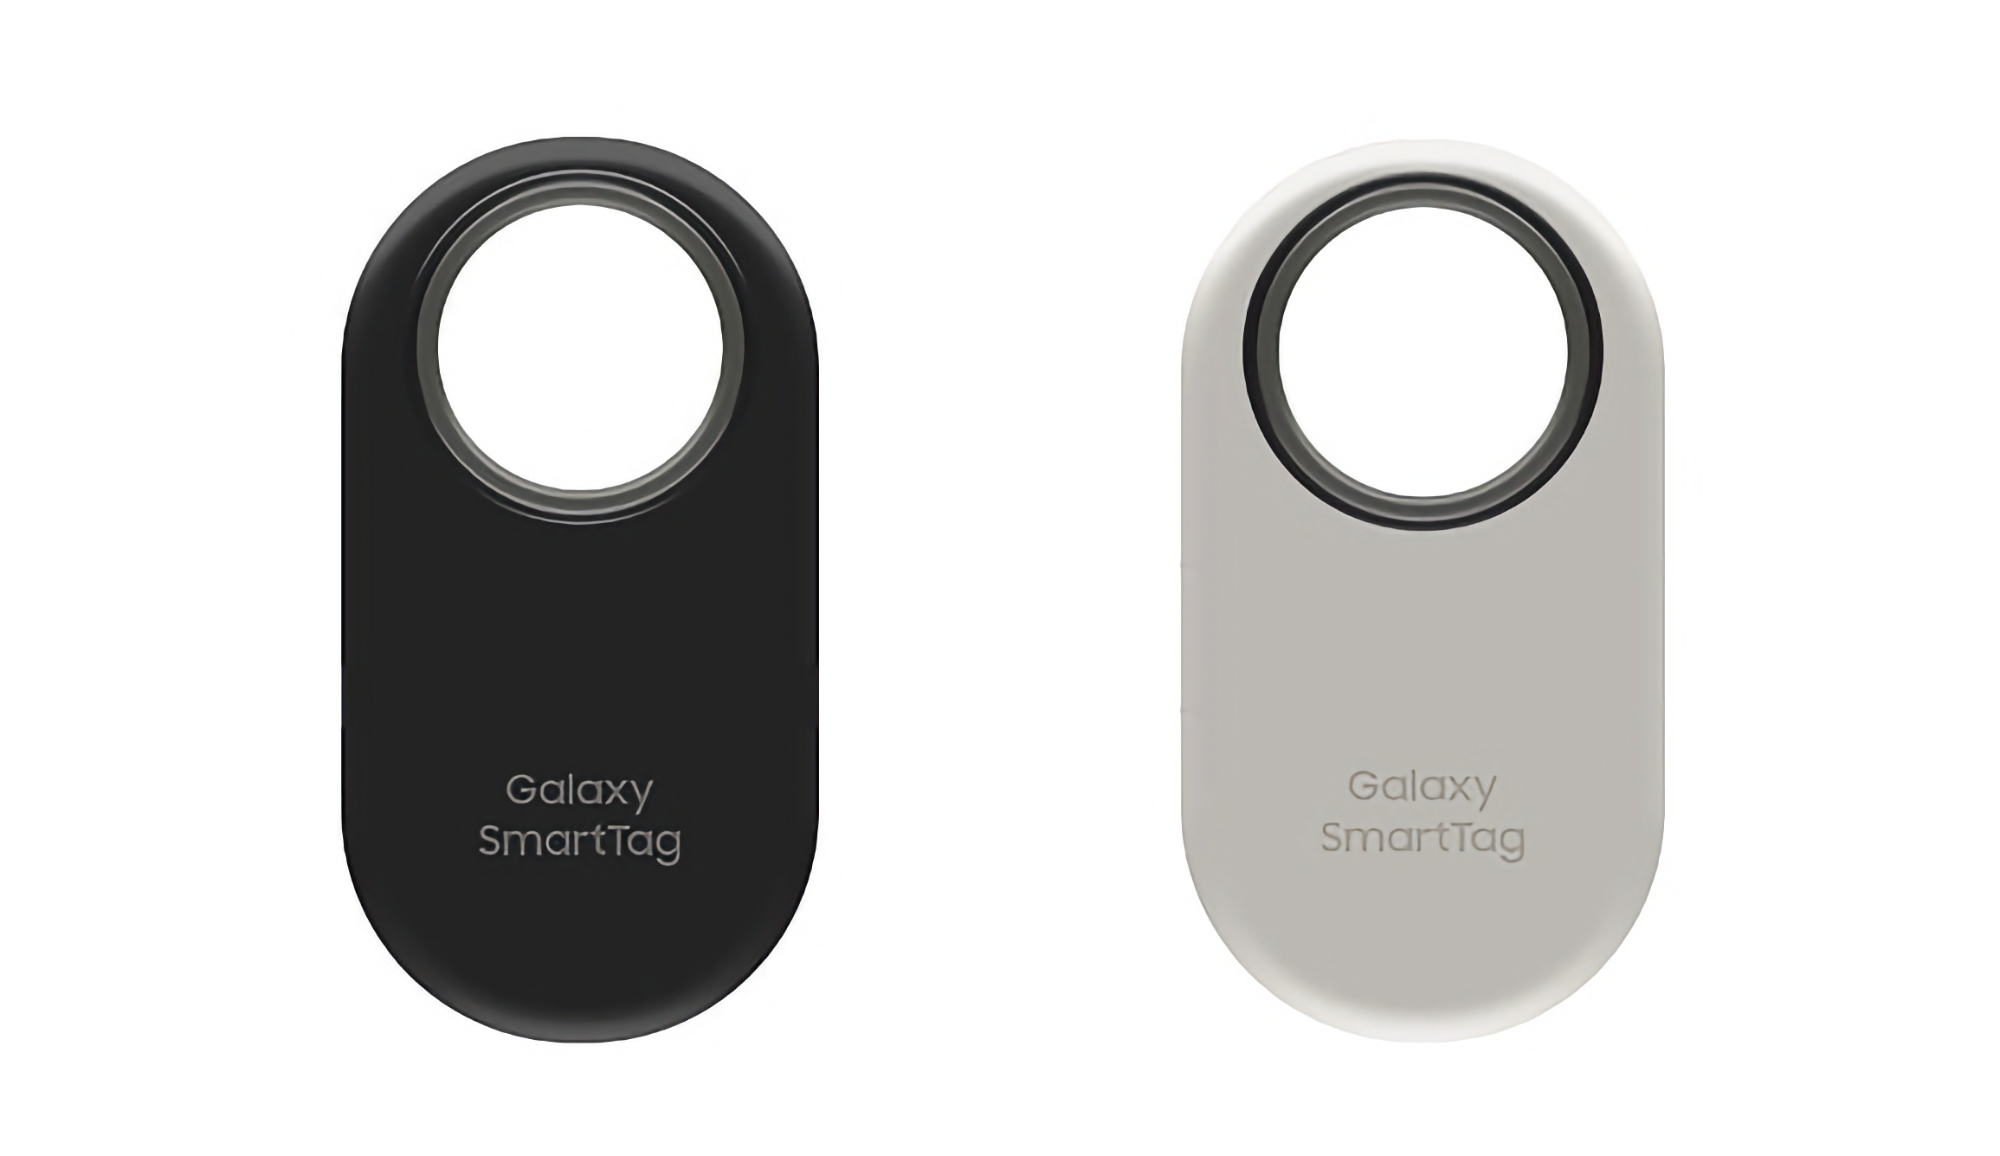 Samsung Galaxy Galaxy Smart Tag 2 pojawił się na renderach, premiera nowości nie jest odległa